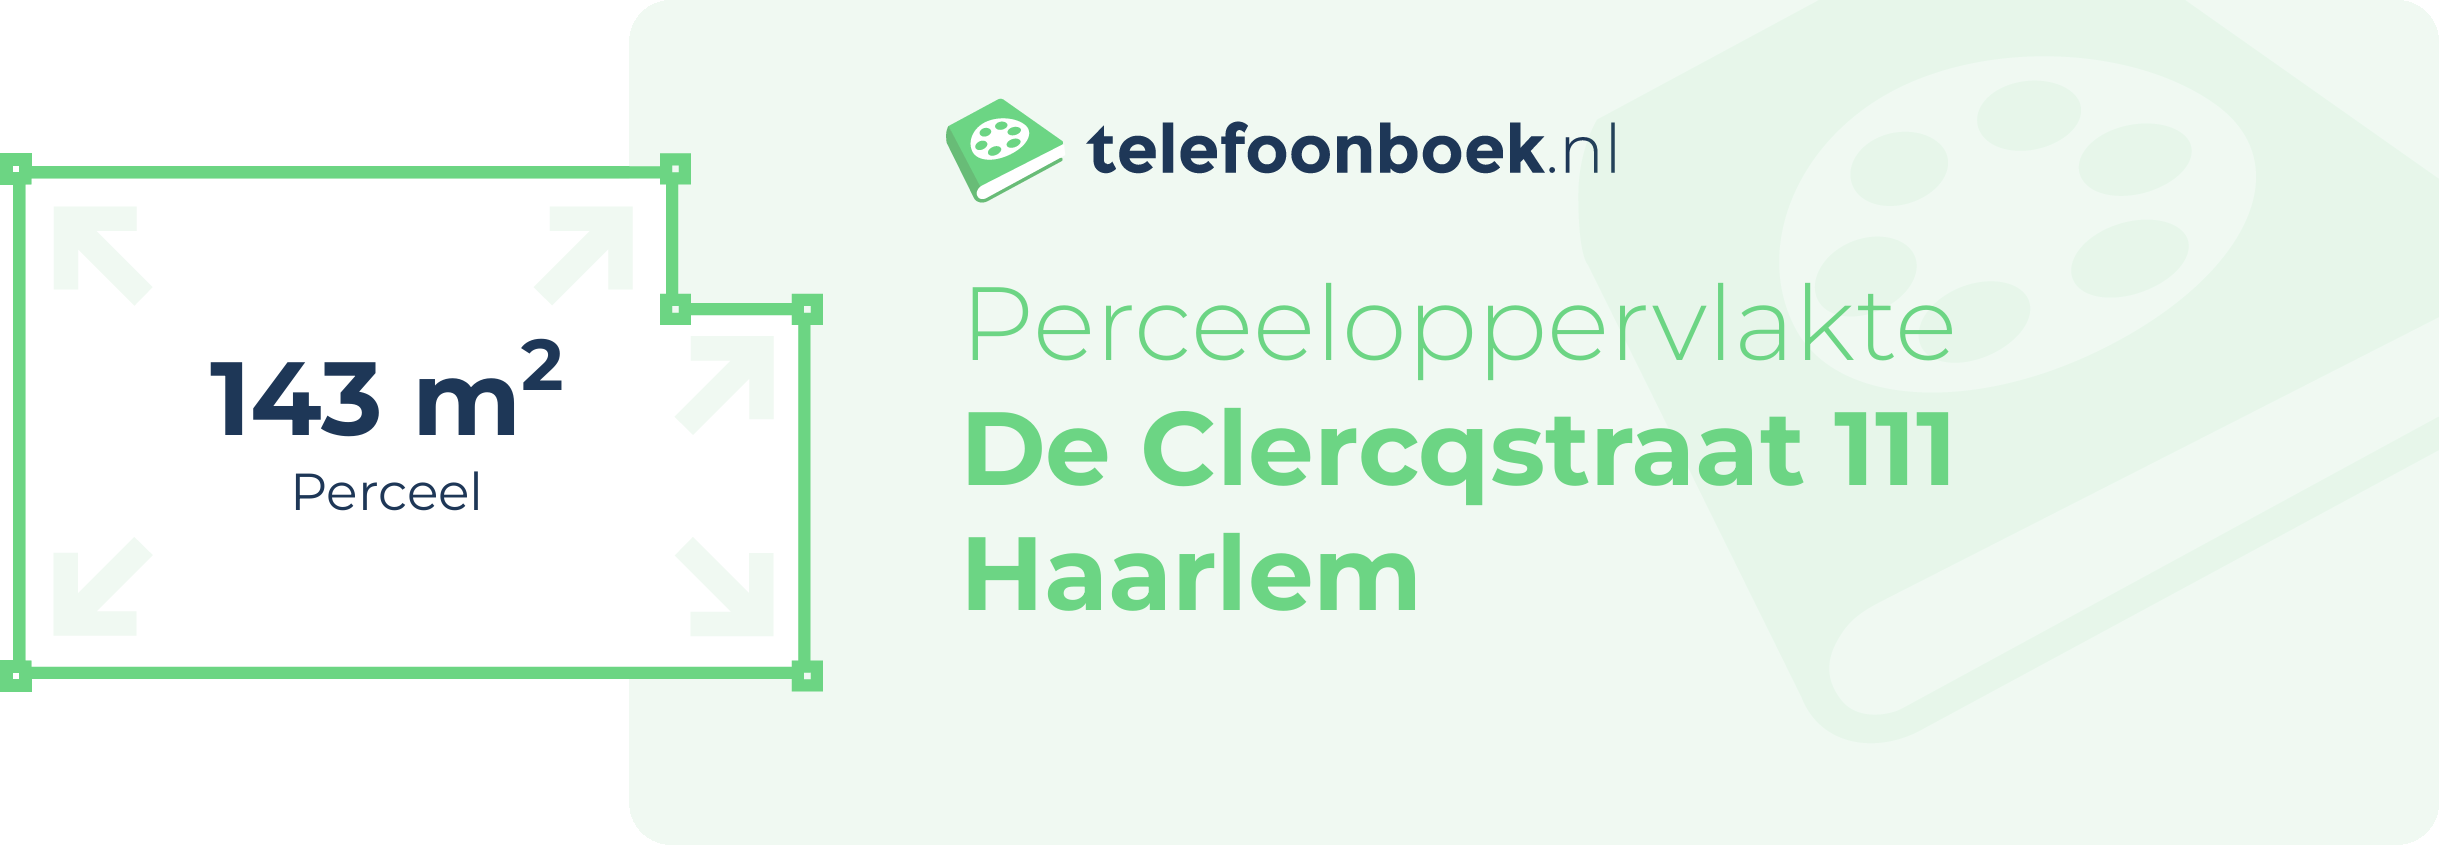 Perceeloppervlakte De Clercqstraat 111 Haarlem